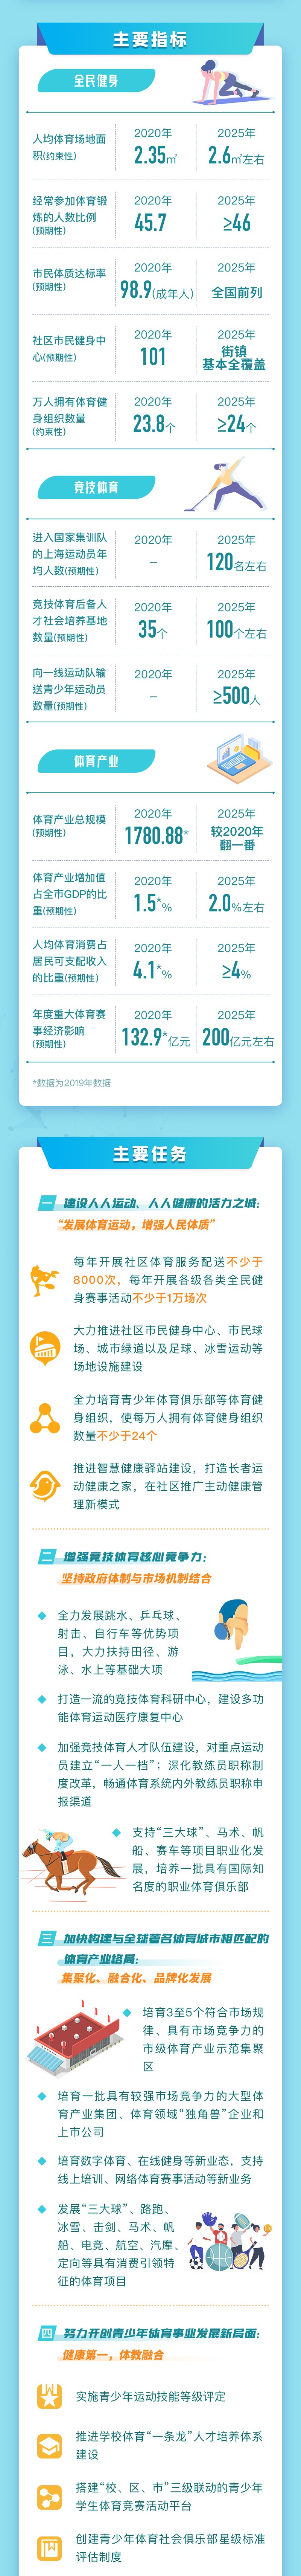 上海市人民政府办公厅印发《上海市体育发展“十四五”规划》（附全文）